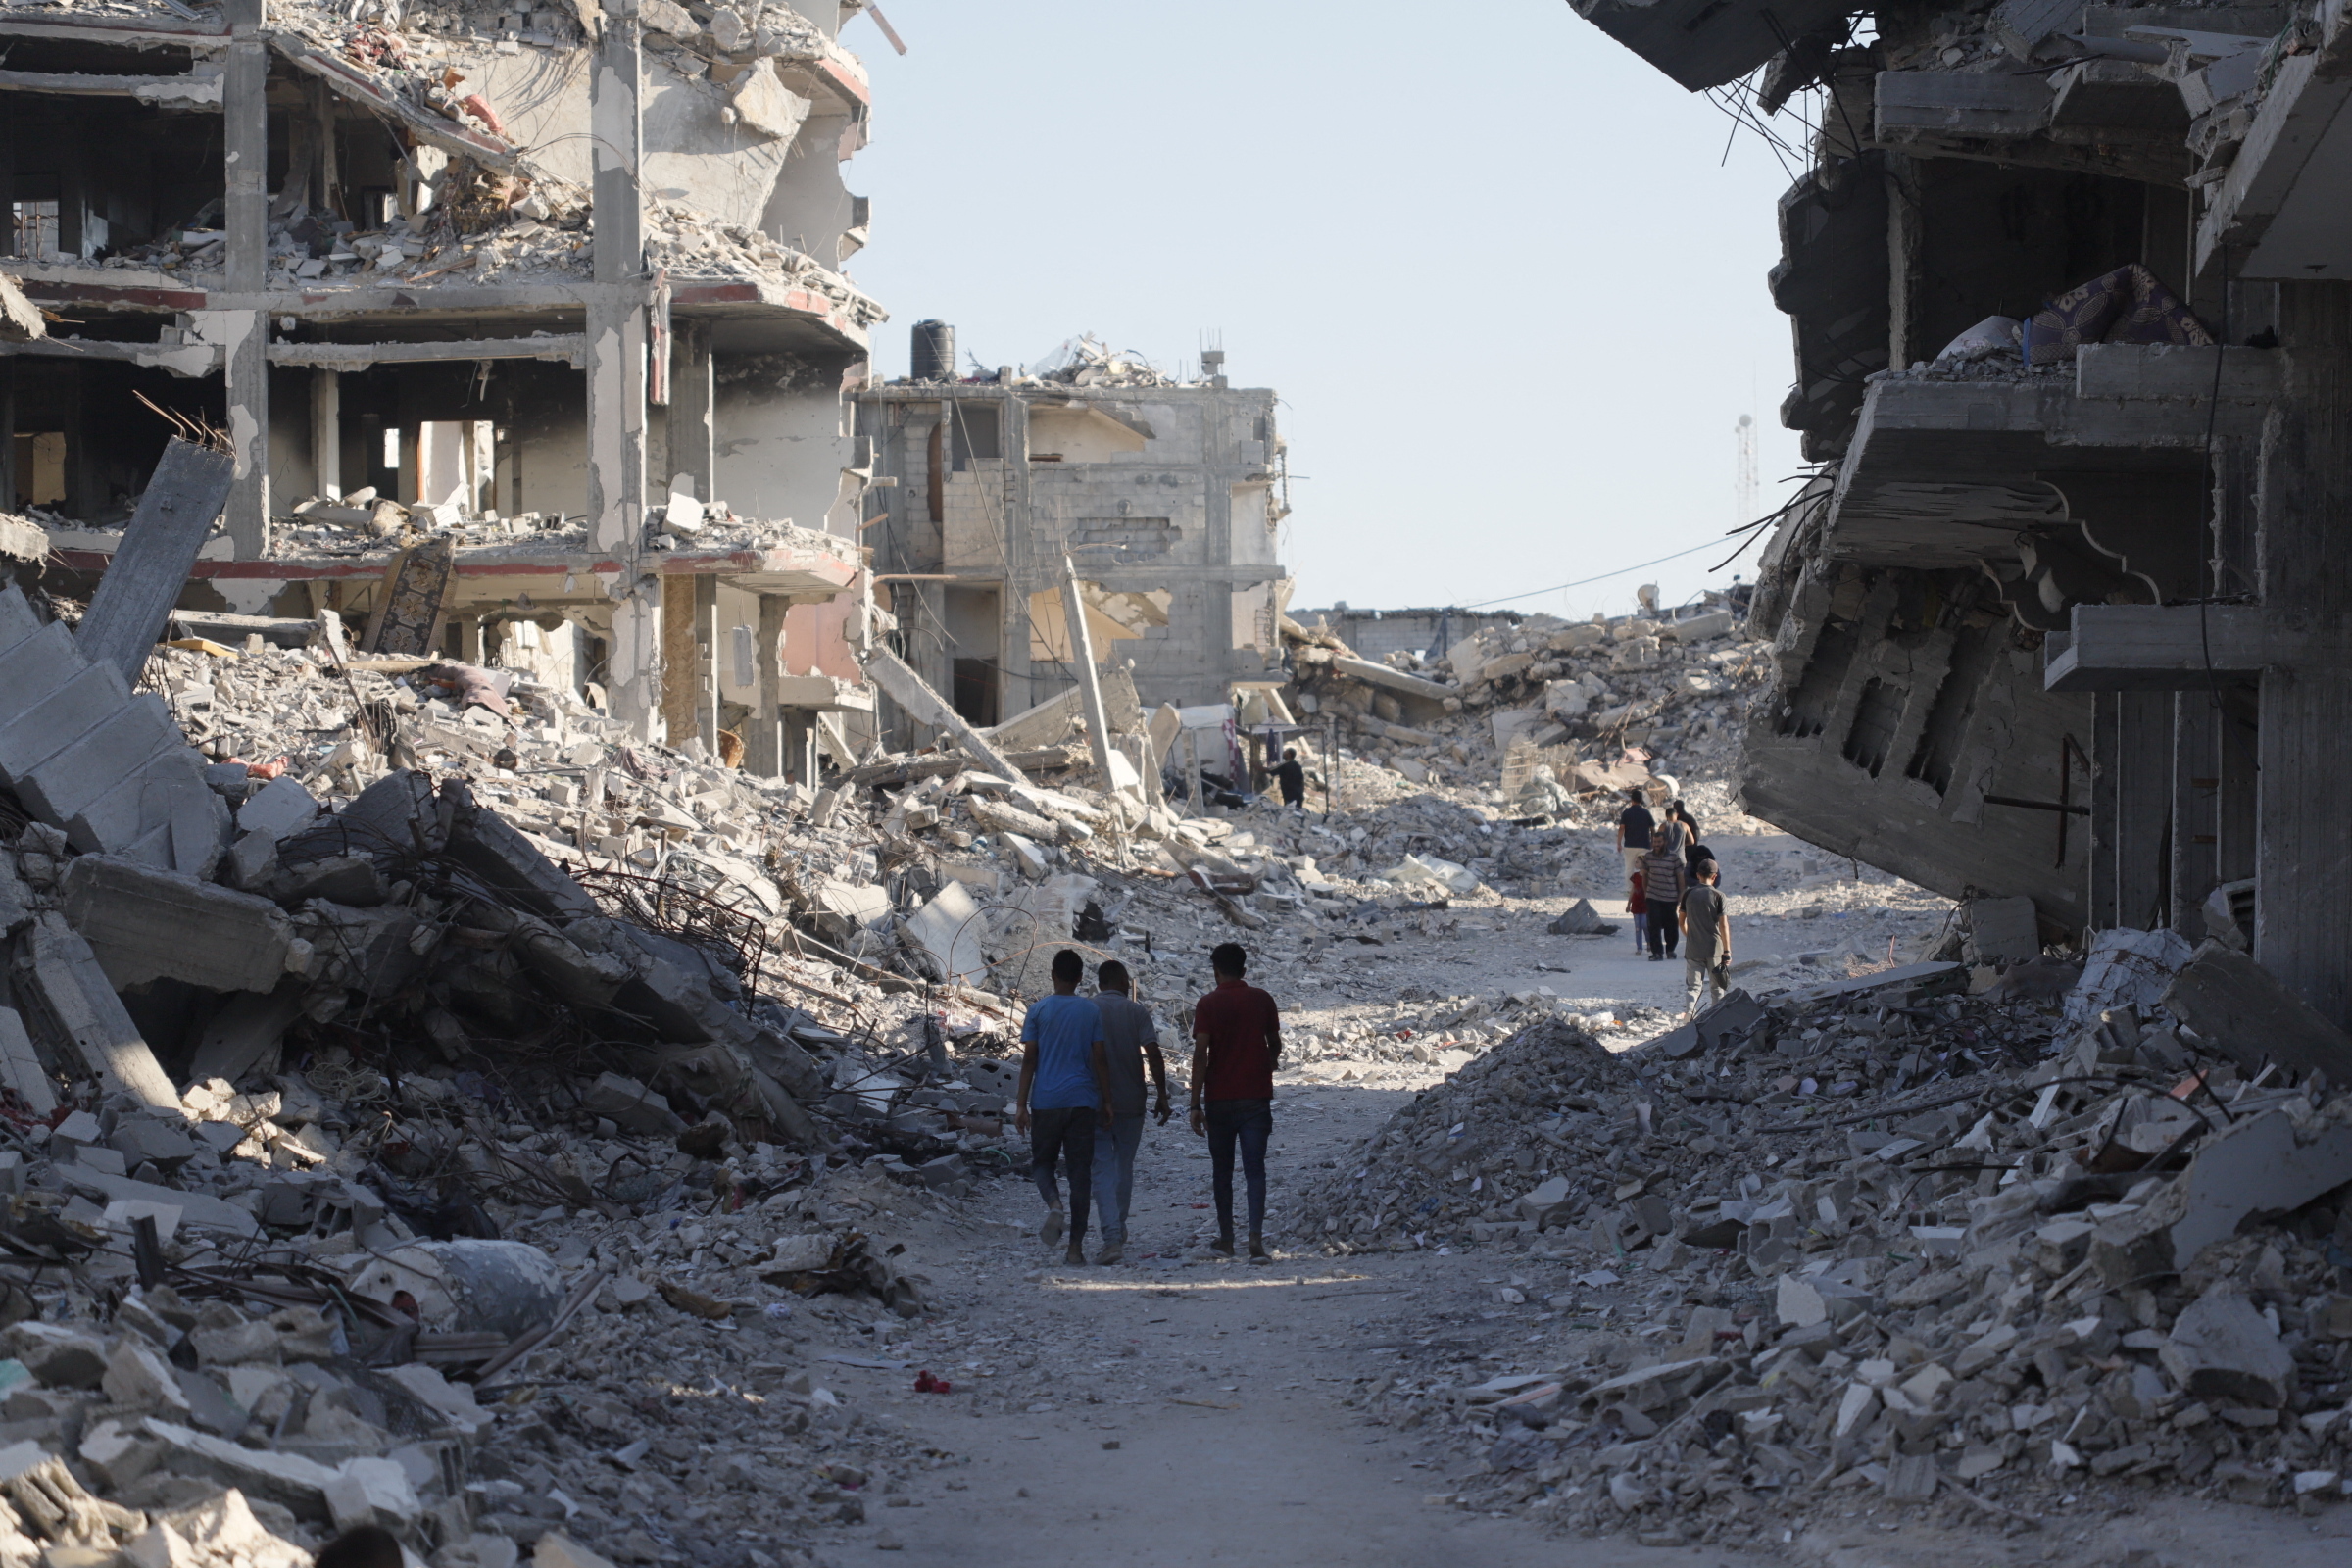 Die Aufnahme zeigt das Ausmaß der Zerstörung in Gaza und zwei Menschen, die zwischen völlig zerstörten Gebäuden und Trümmern laufen.